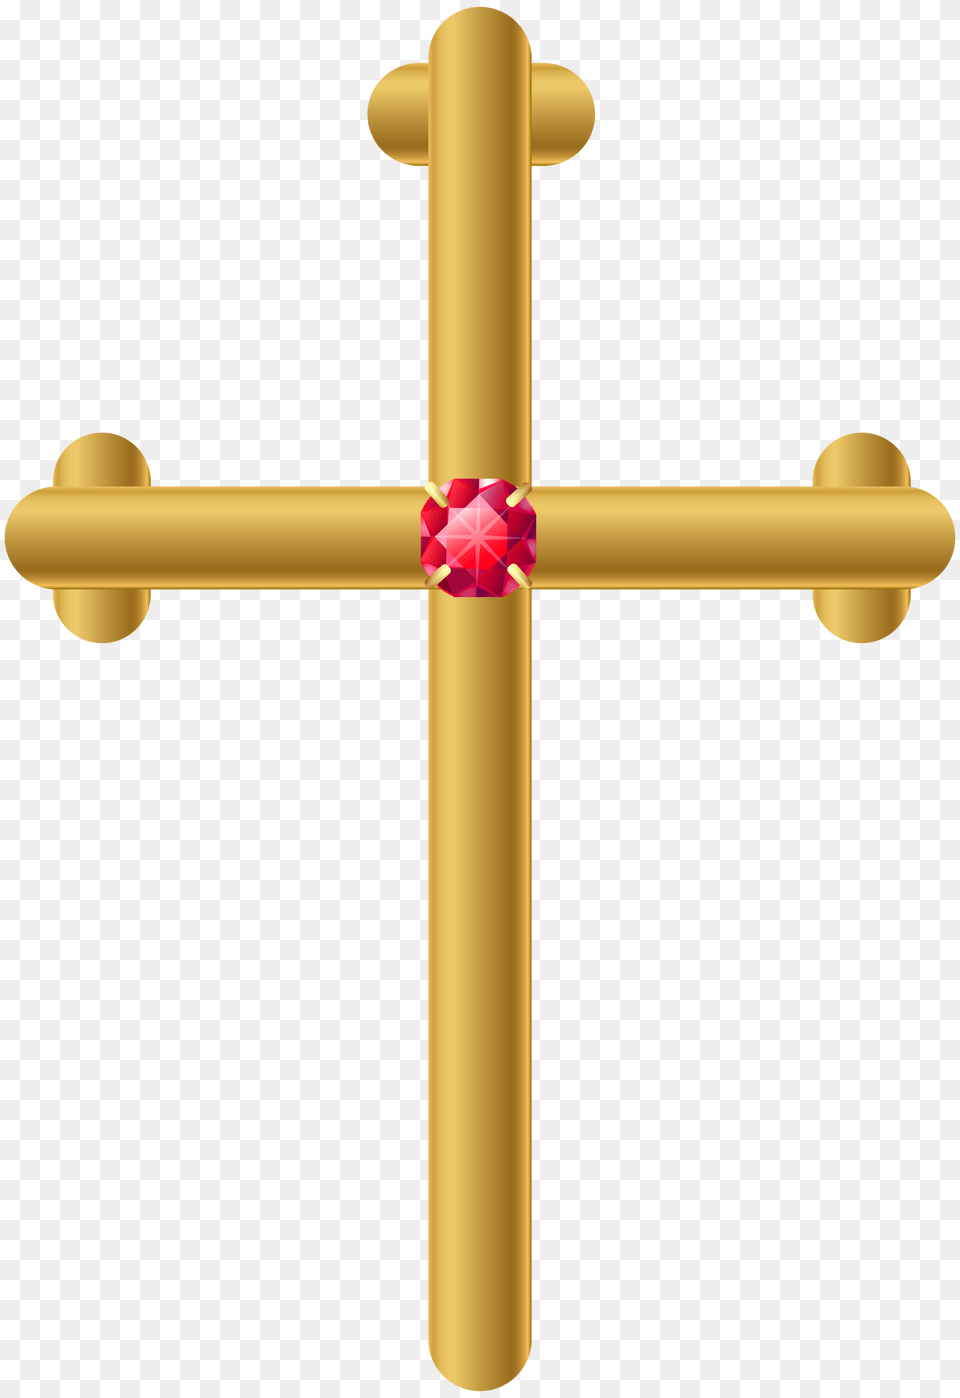 Golden Cross Clip Art, Symbol Free Transparent Png